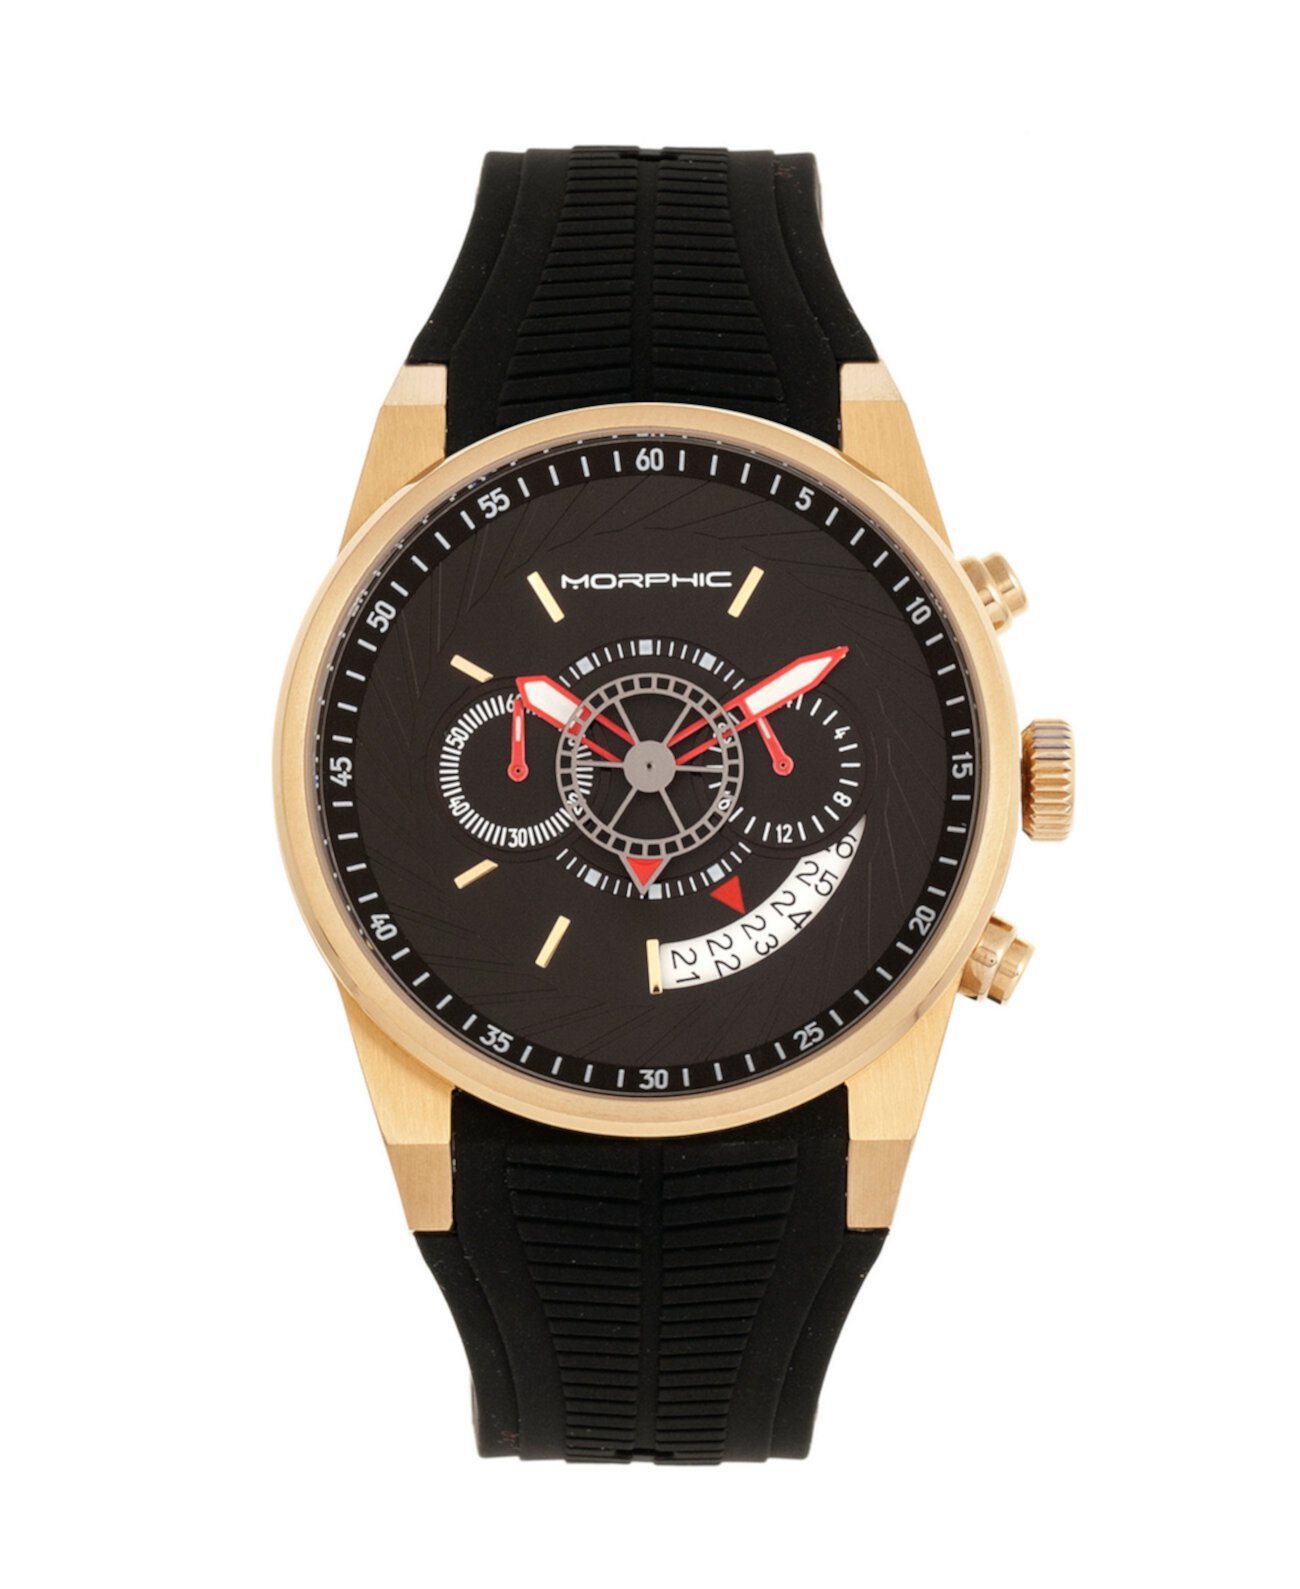 Кварцевые часы серии M72, MPH7203, черный / золотой хронограф, силиконовые часы, 43 мм Morphic